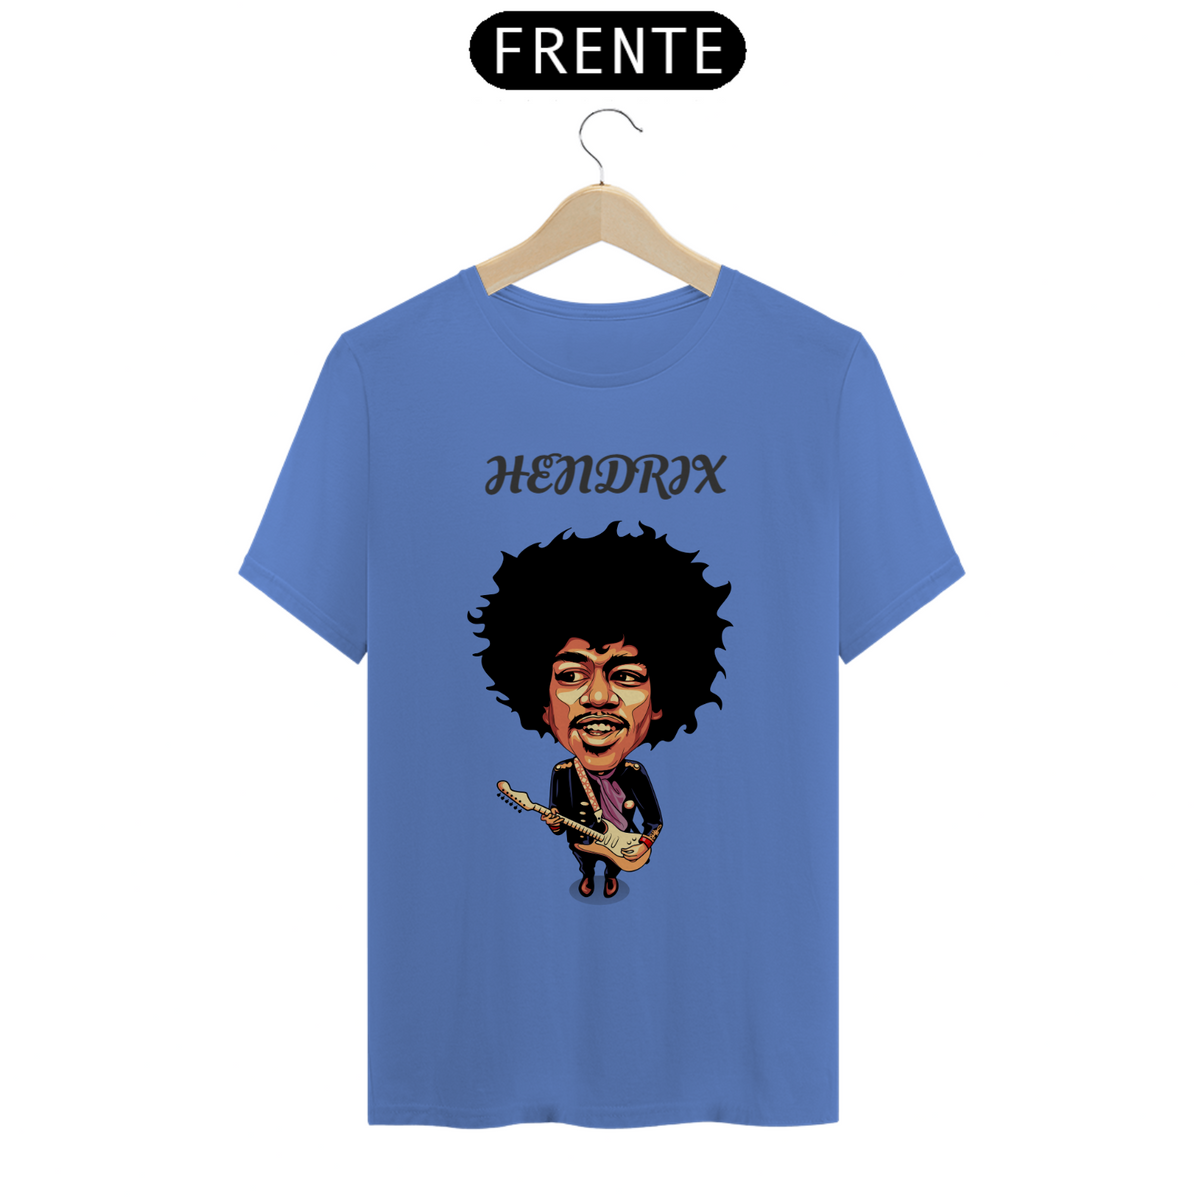 Nome do produto: hENDRIX